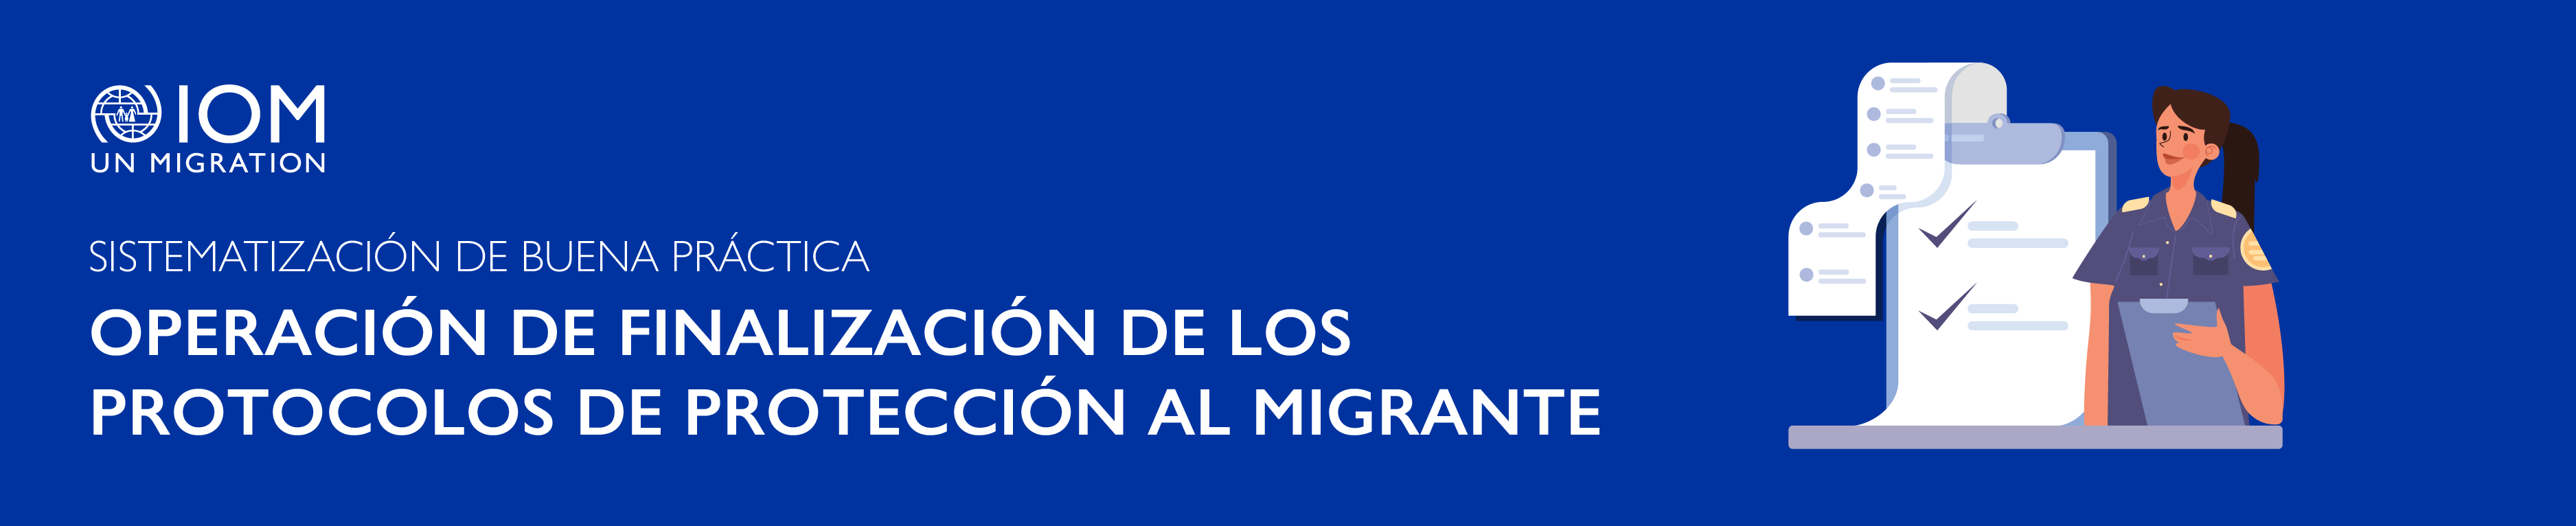 Operación de Finalización de los Protocolos de Protección al Migrante